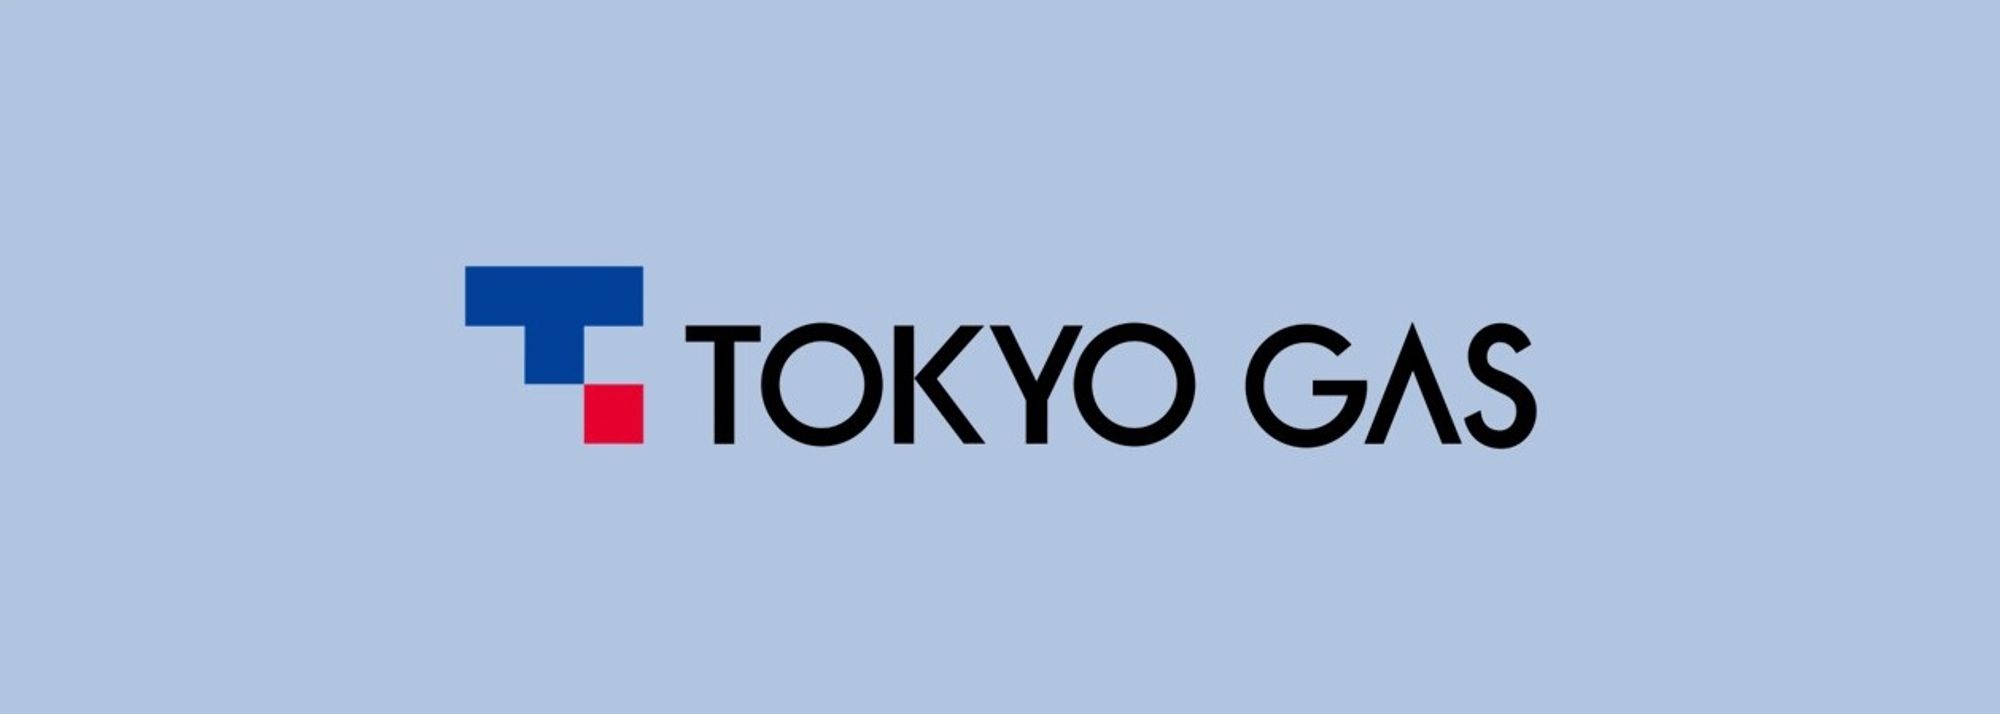 この度、当財団は、東京ガス株式会社と東京2025世界陸上サポーター（カテゴリー：電気公共サービス・ガス・ガス公共サービス）のスポンサーシップ契約を締結しました。